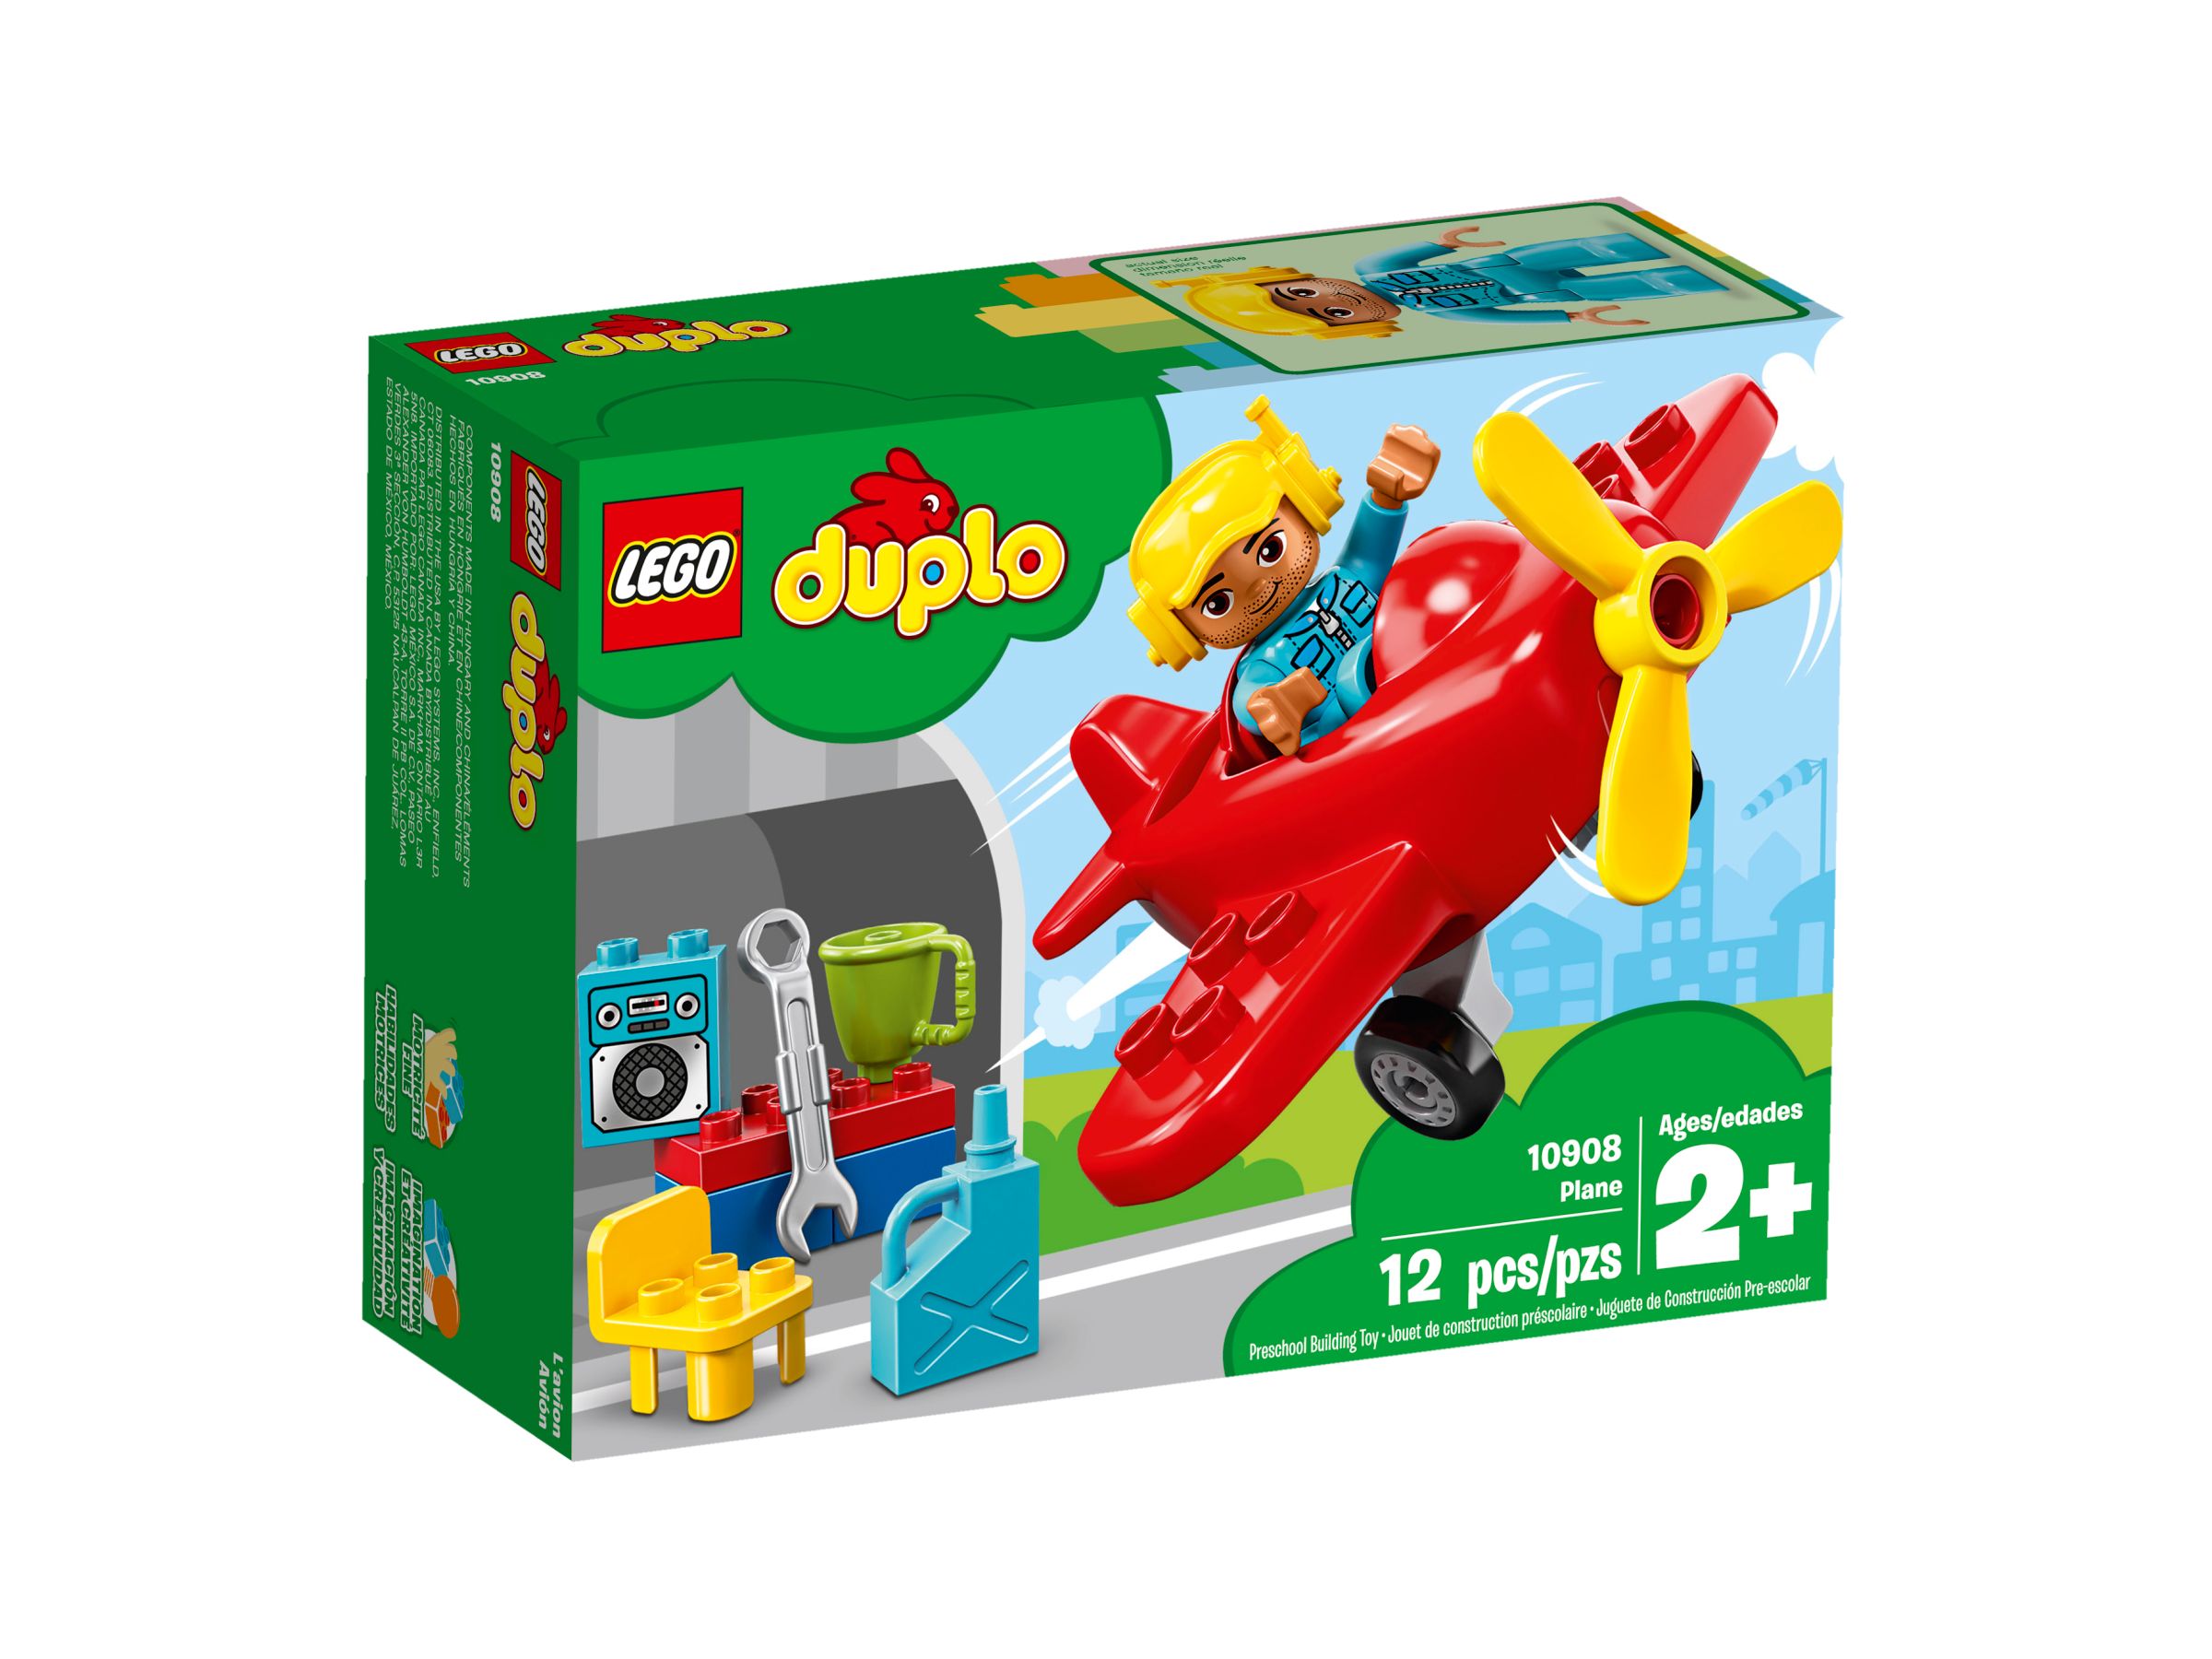 LEGO Duplo 10908 Flugzeug LEGO_10908_alt1.jpg